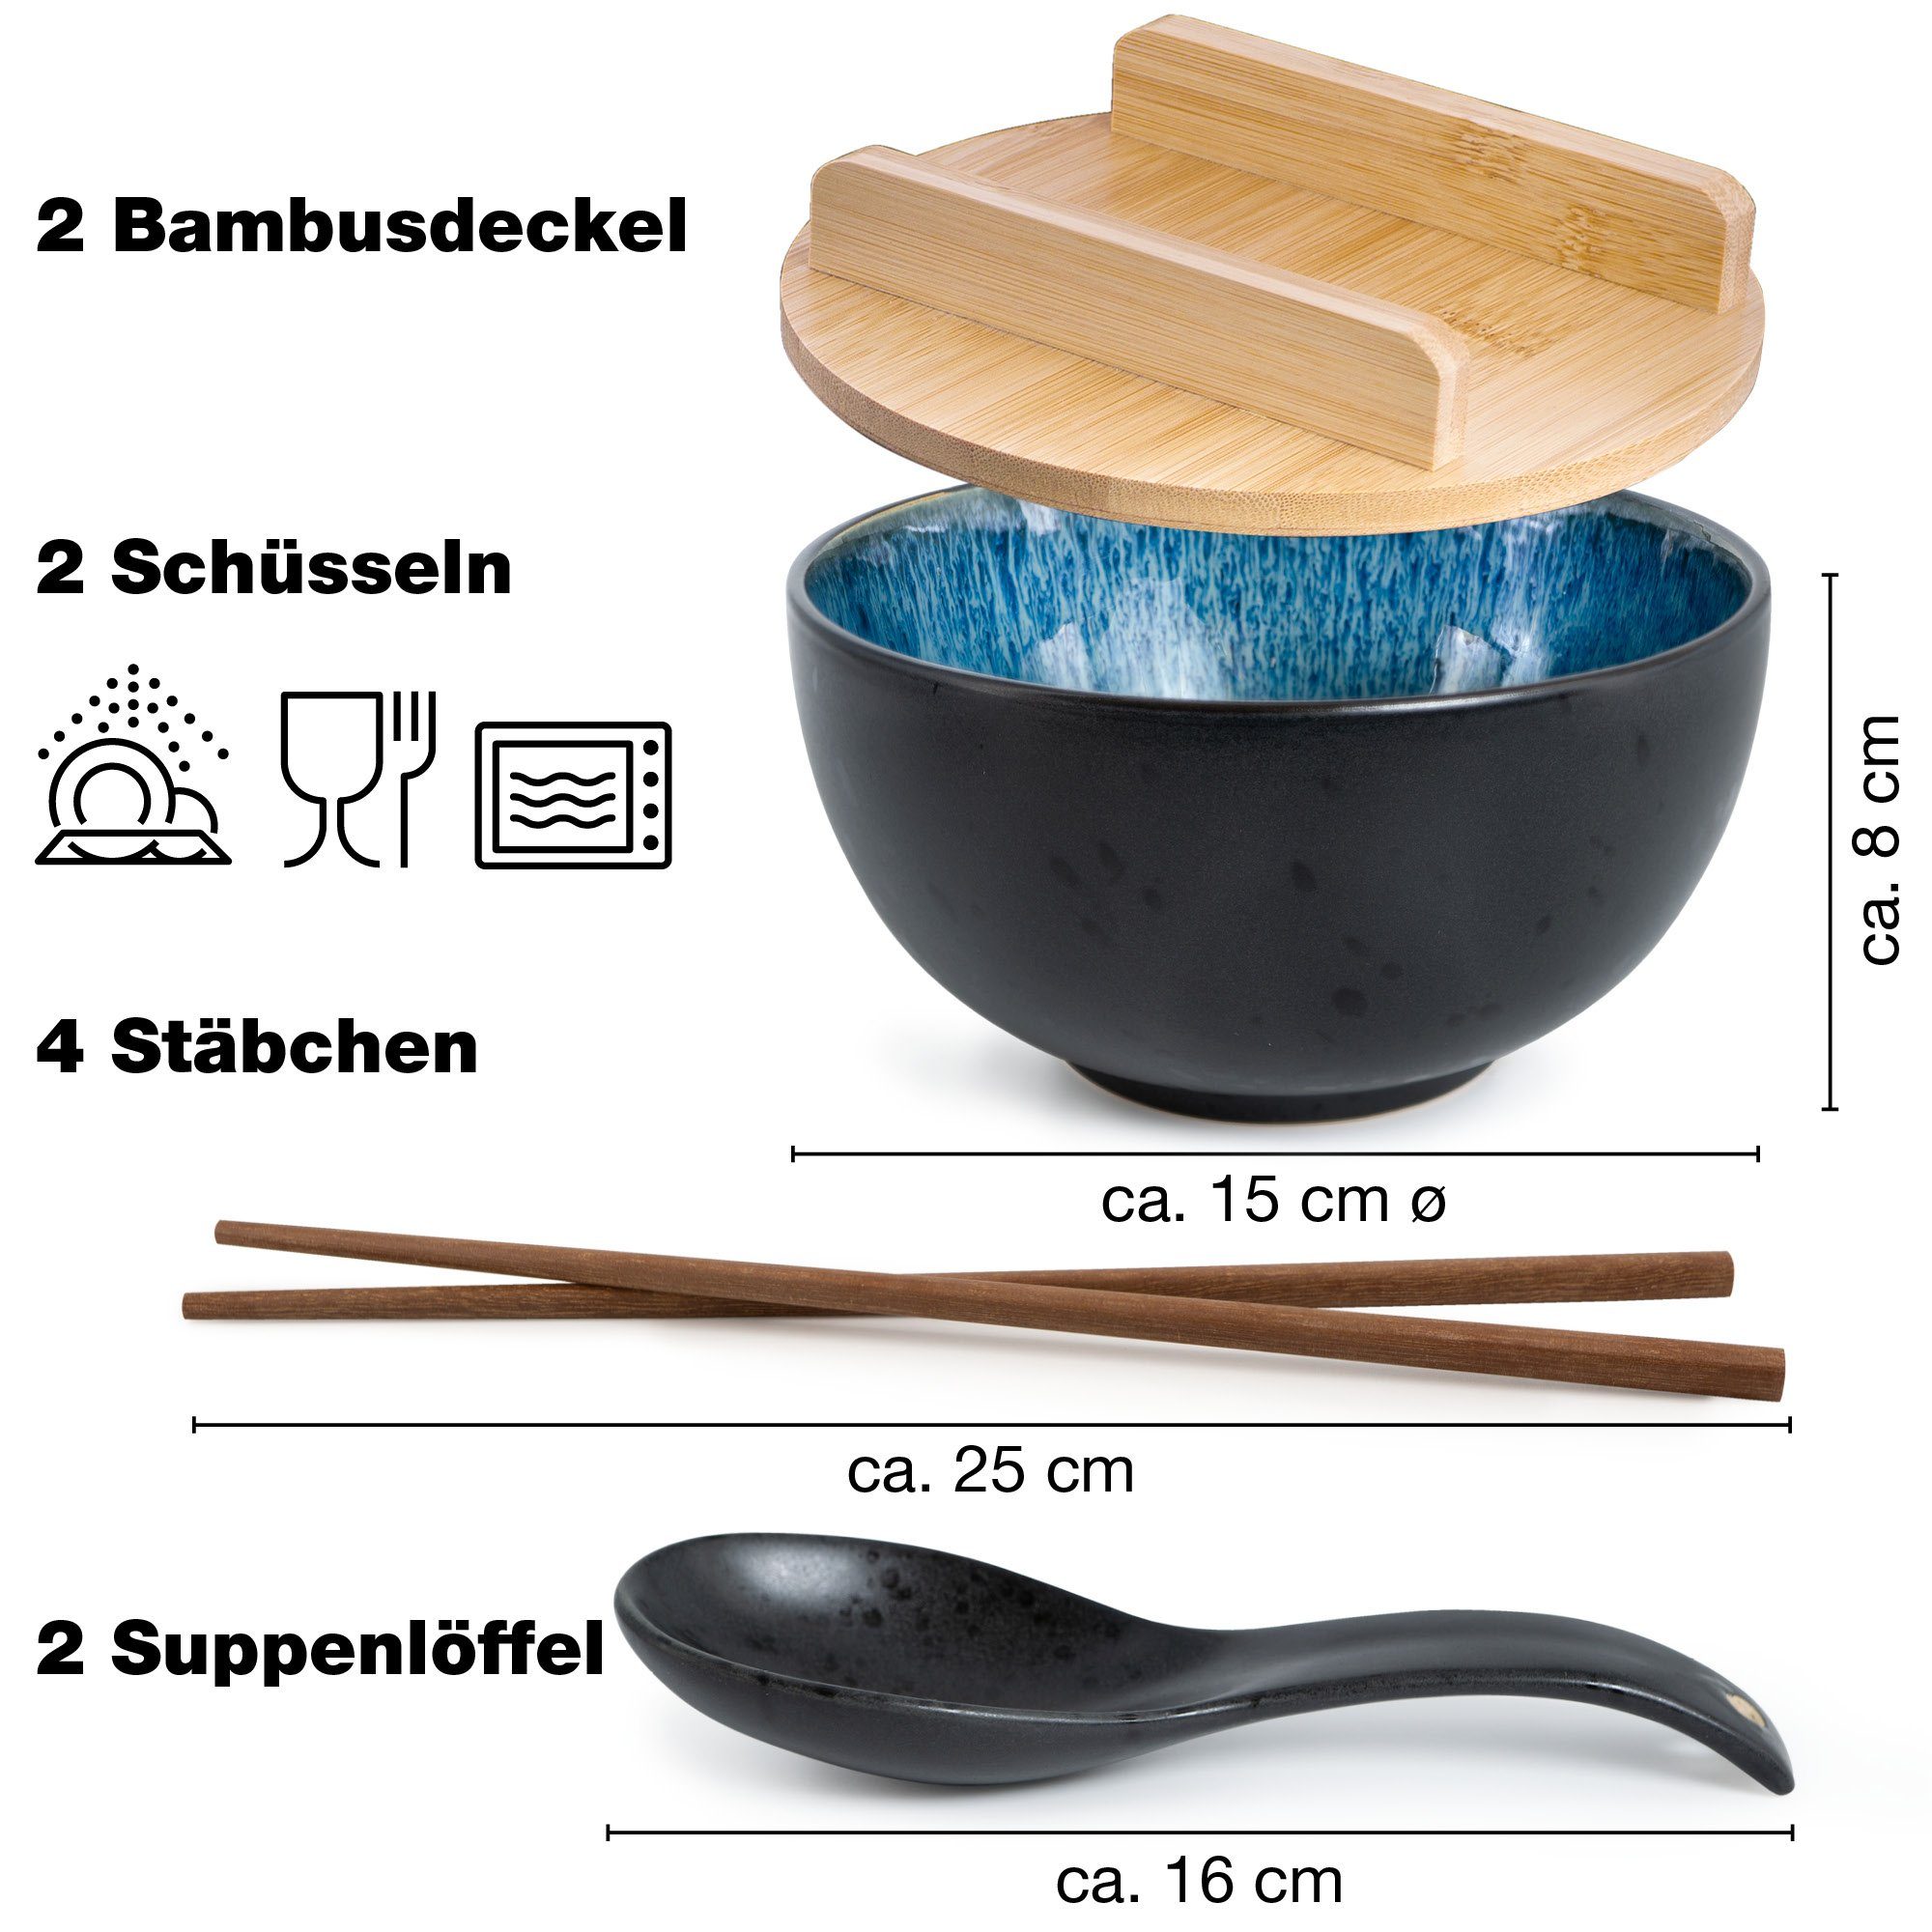 Schwarze Keramik Ramen & Miso Japanischen Stil Löffel Suppenlöffel 